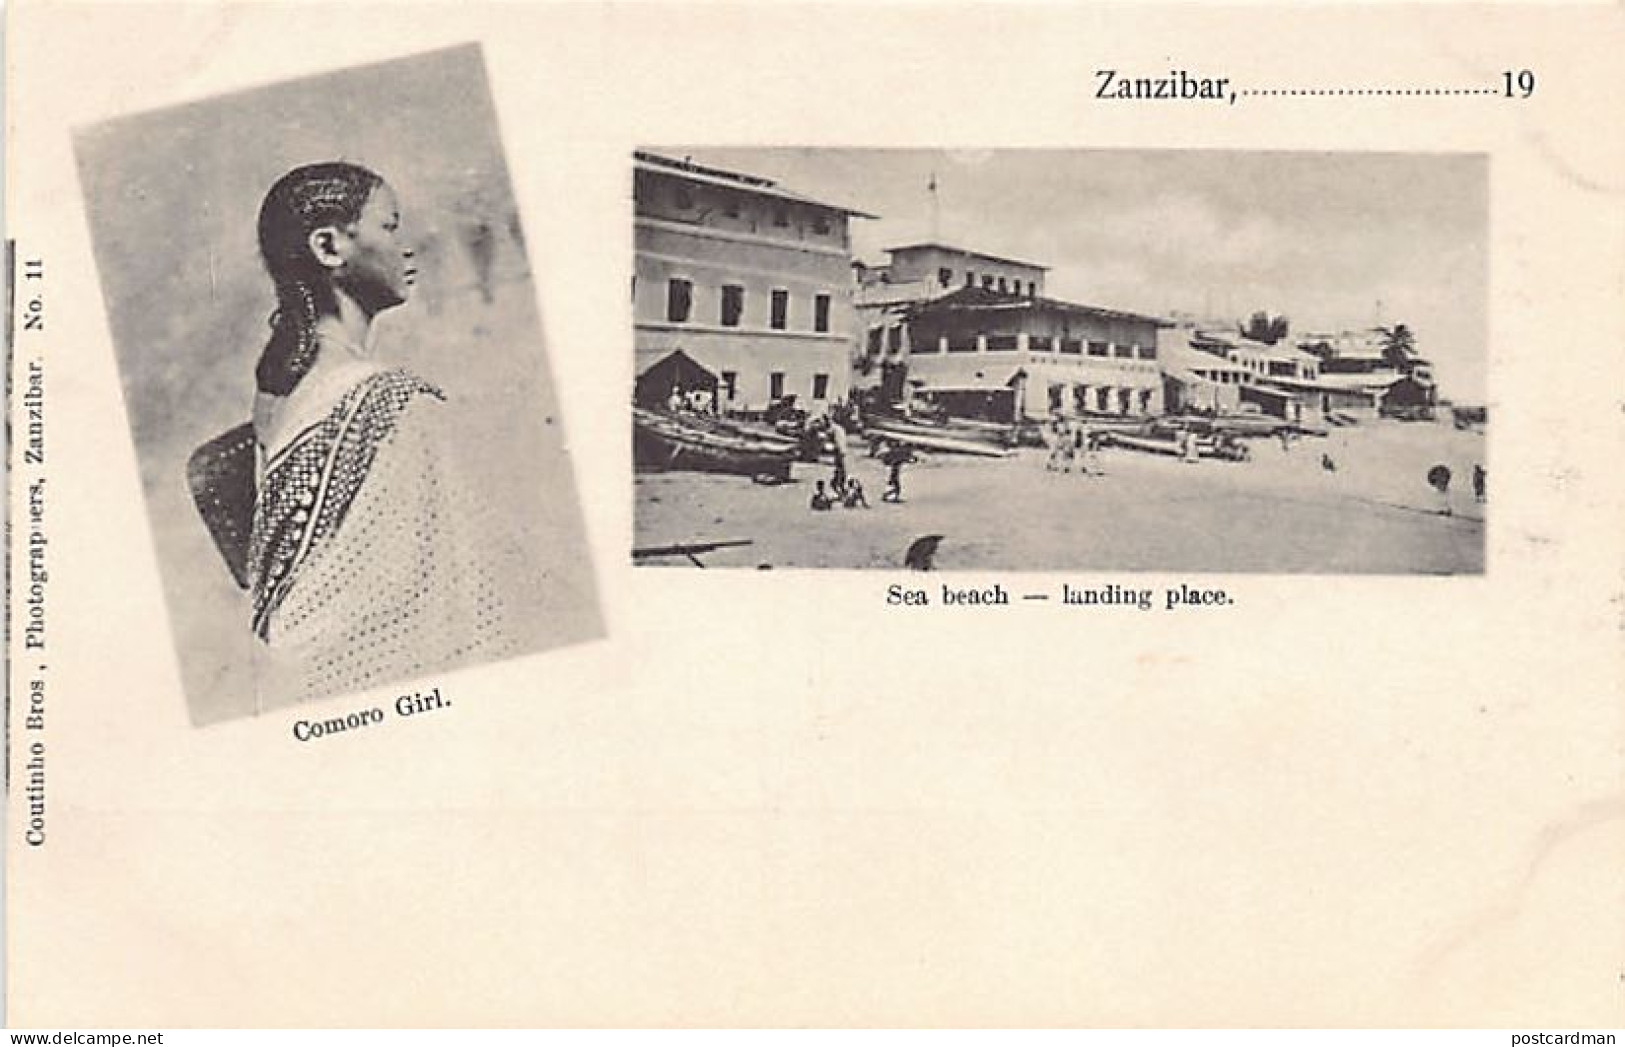 Zanzibar - Comoro Girl - Sea Beach - Landing Place - Publ. Coutinho Bros. 11 - Tansania